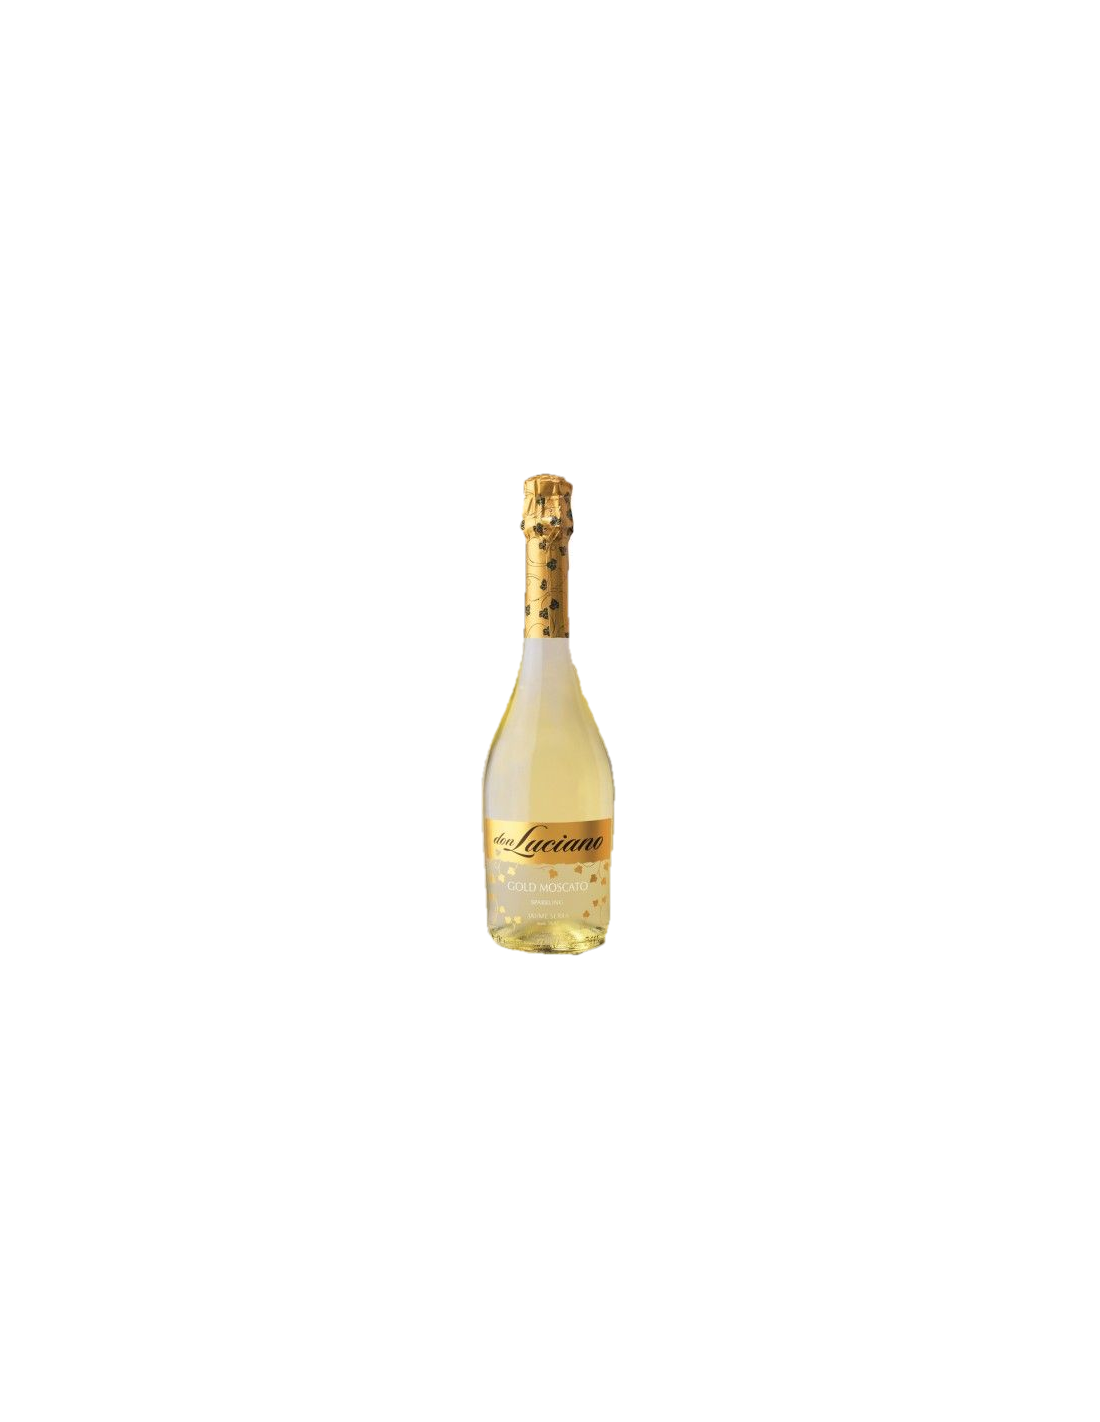 Vin spumant alb Gold Moscato, Don Luciano La Mancha, 0.75L, 12% alc., Spania alcooldiscount.ro